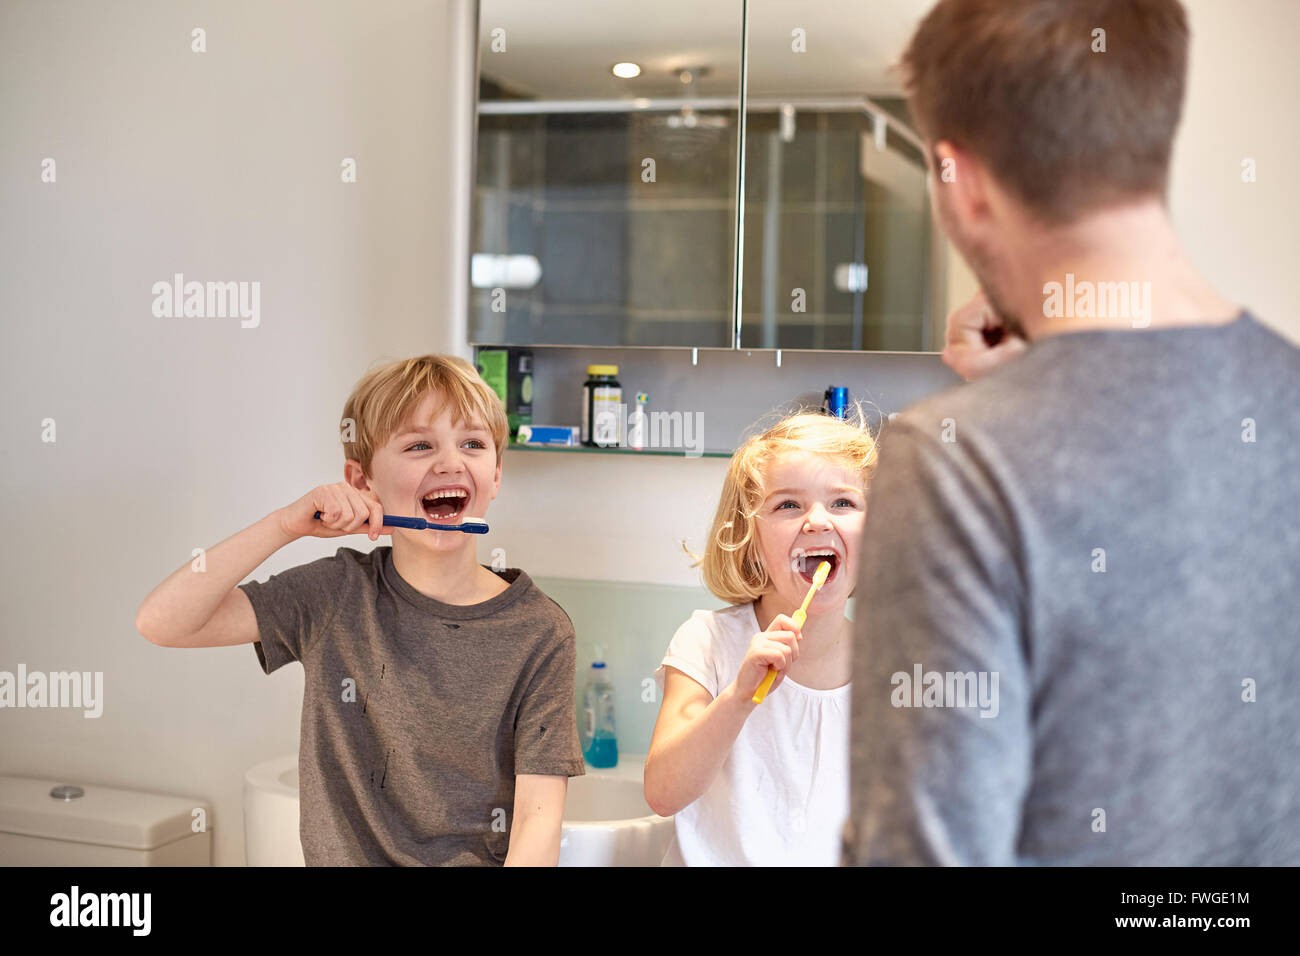 Deux enfants et un homme adulte de nettoyer leurs dents avec une brosse à dents dans une salle de bains. Banque D'Images